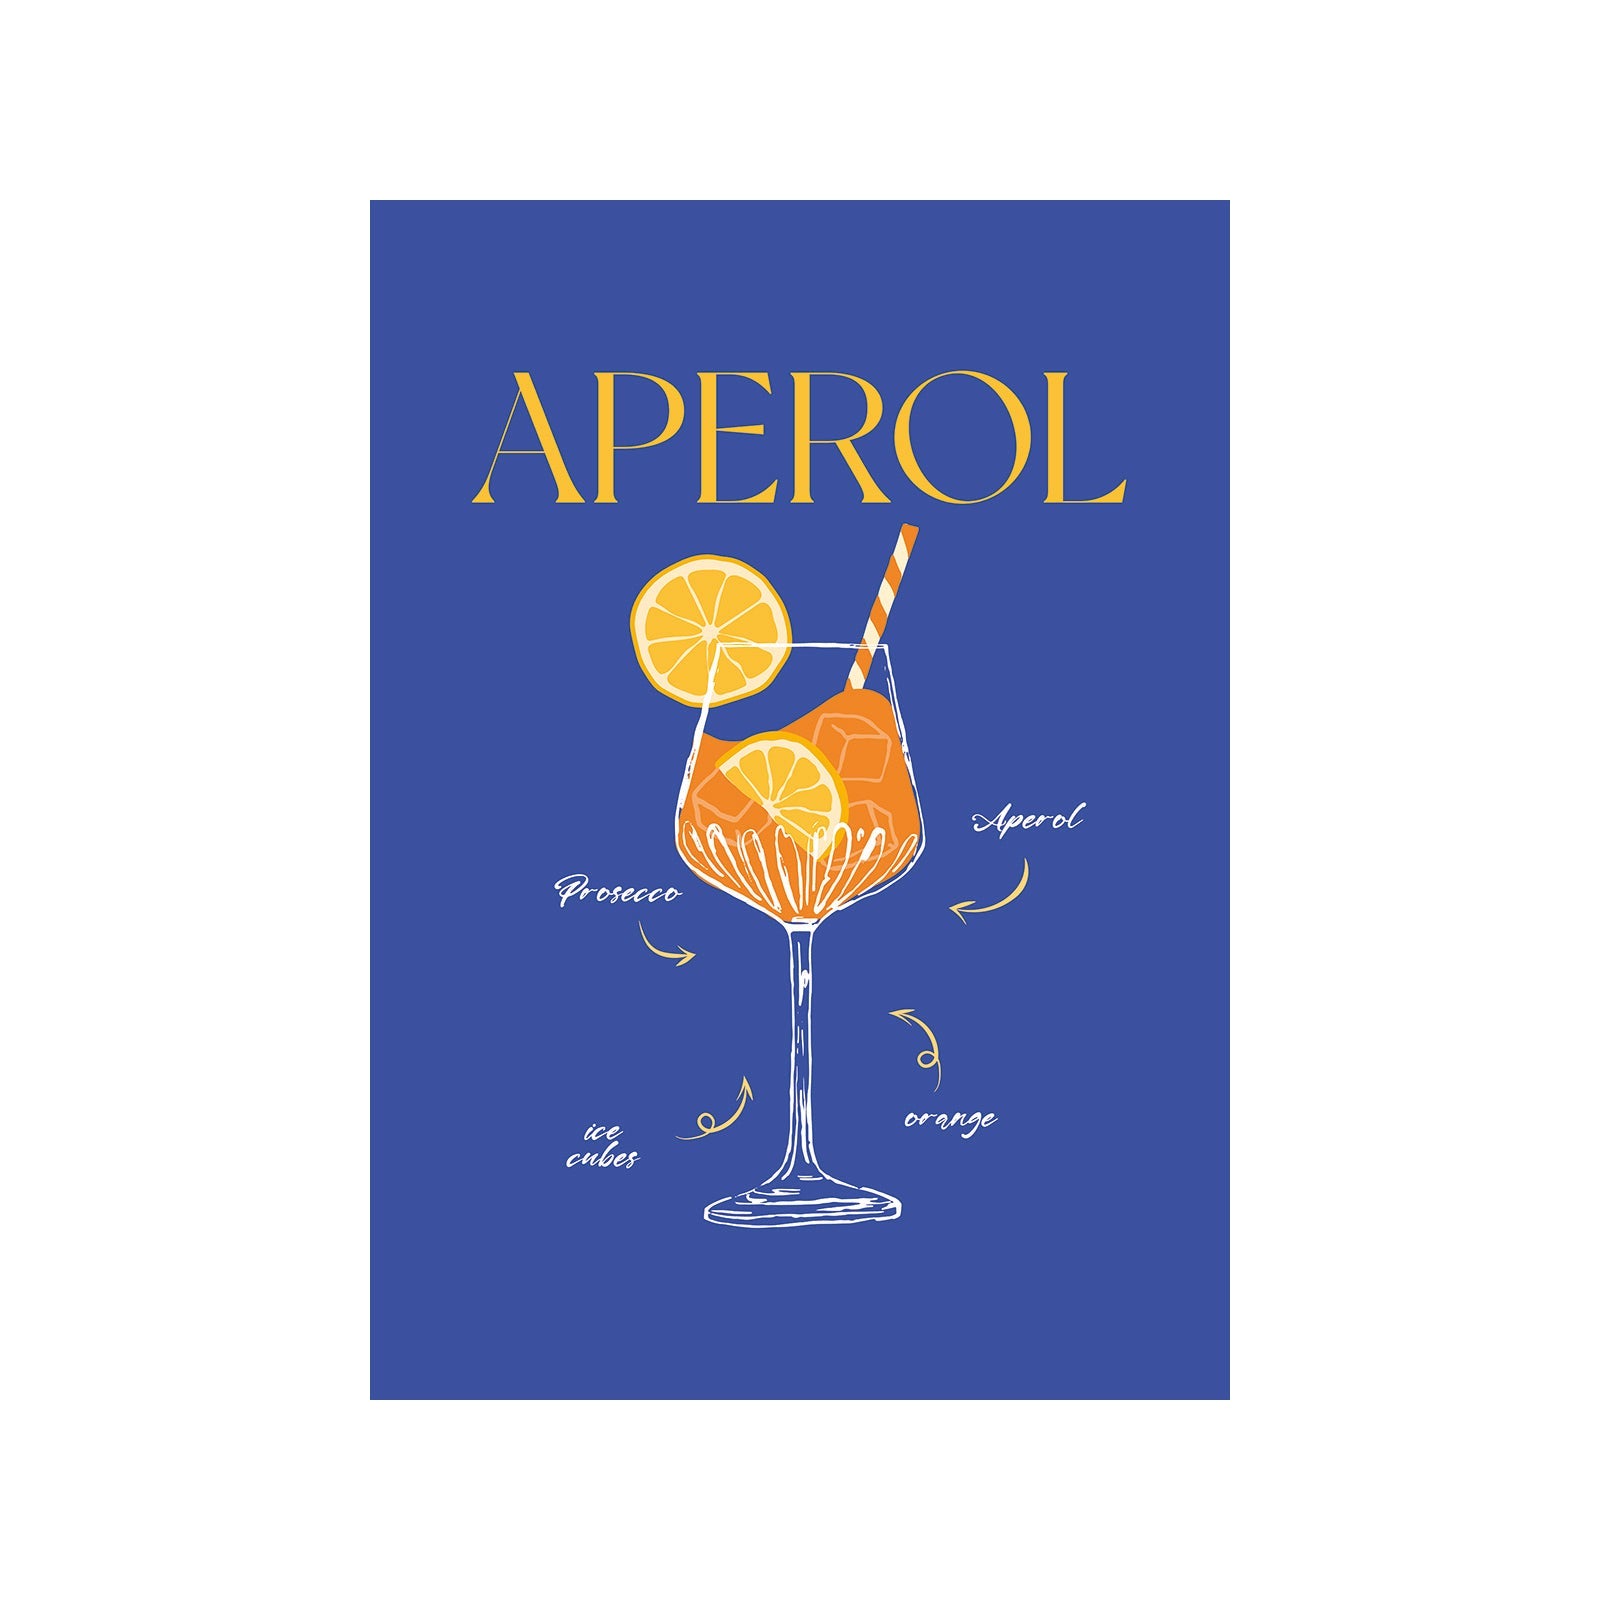 Aperol Artistry